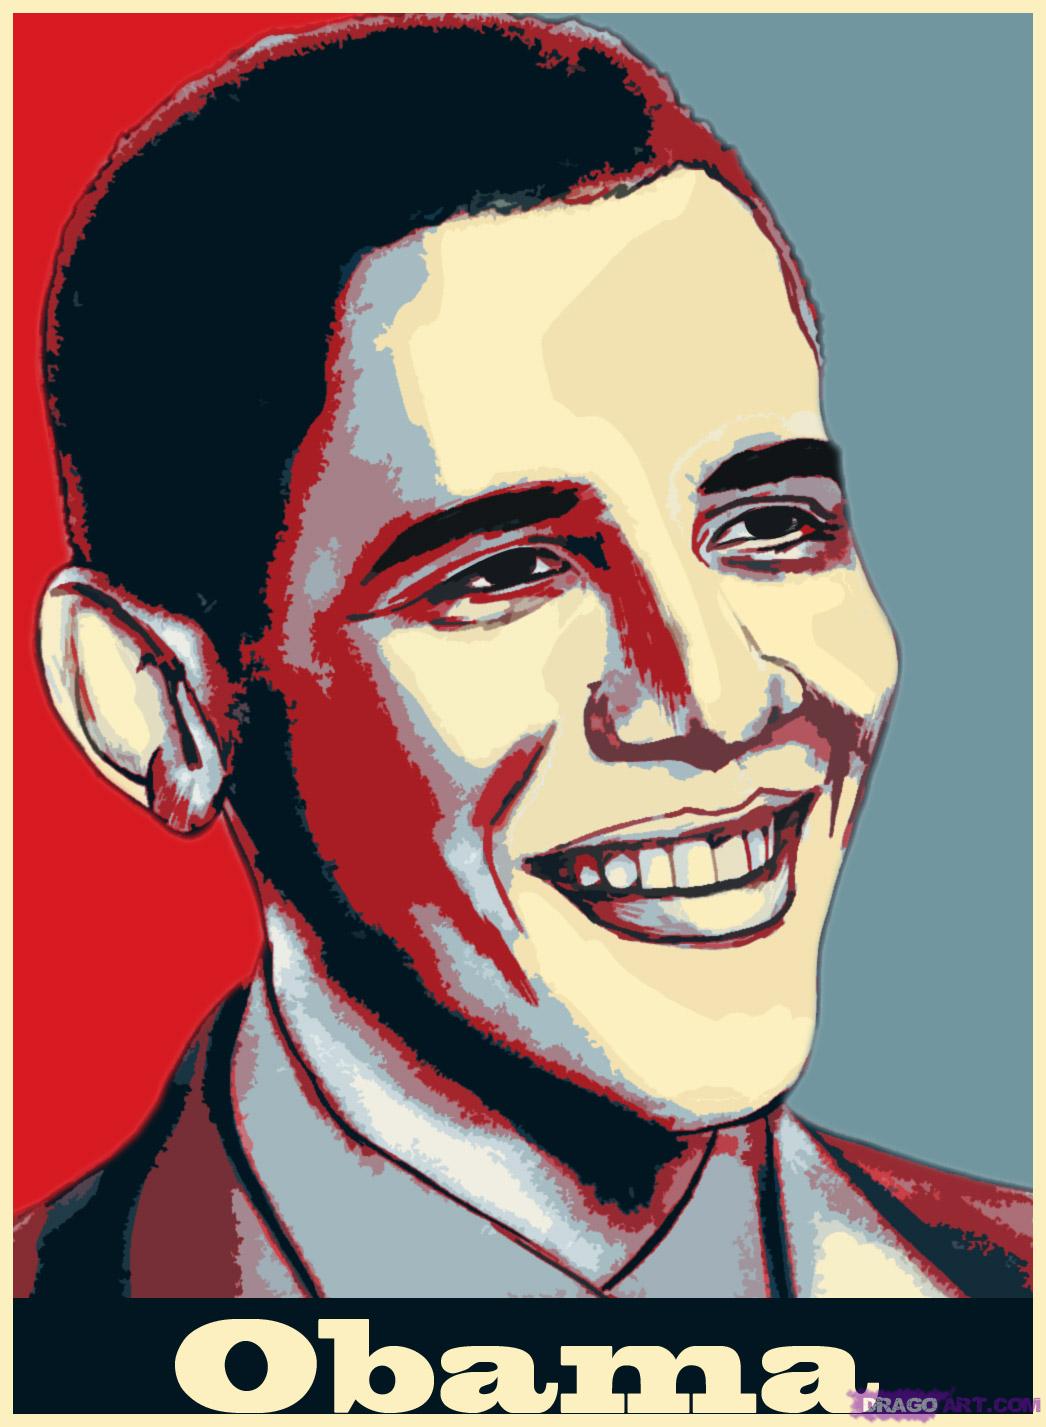 Барак Обама, фото, обои для рабочего стола, президент США, Barak Obama, president USA